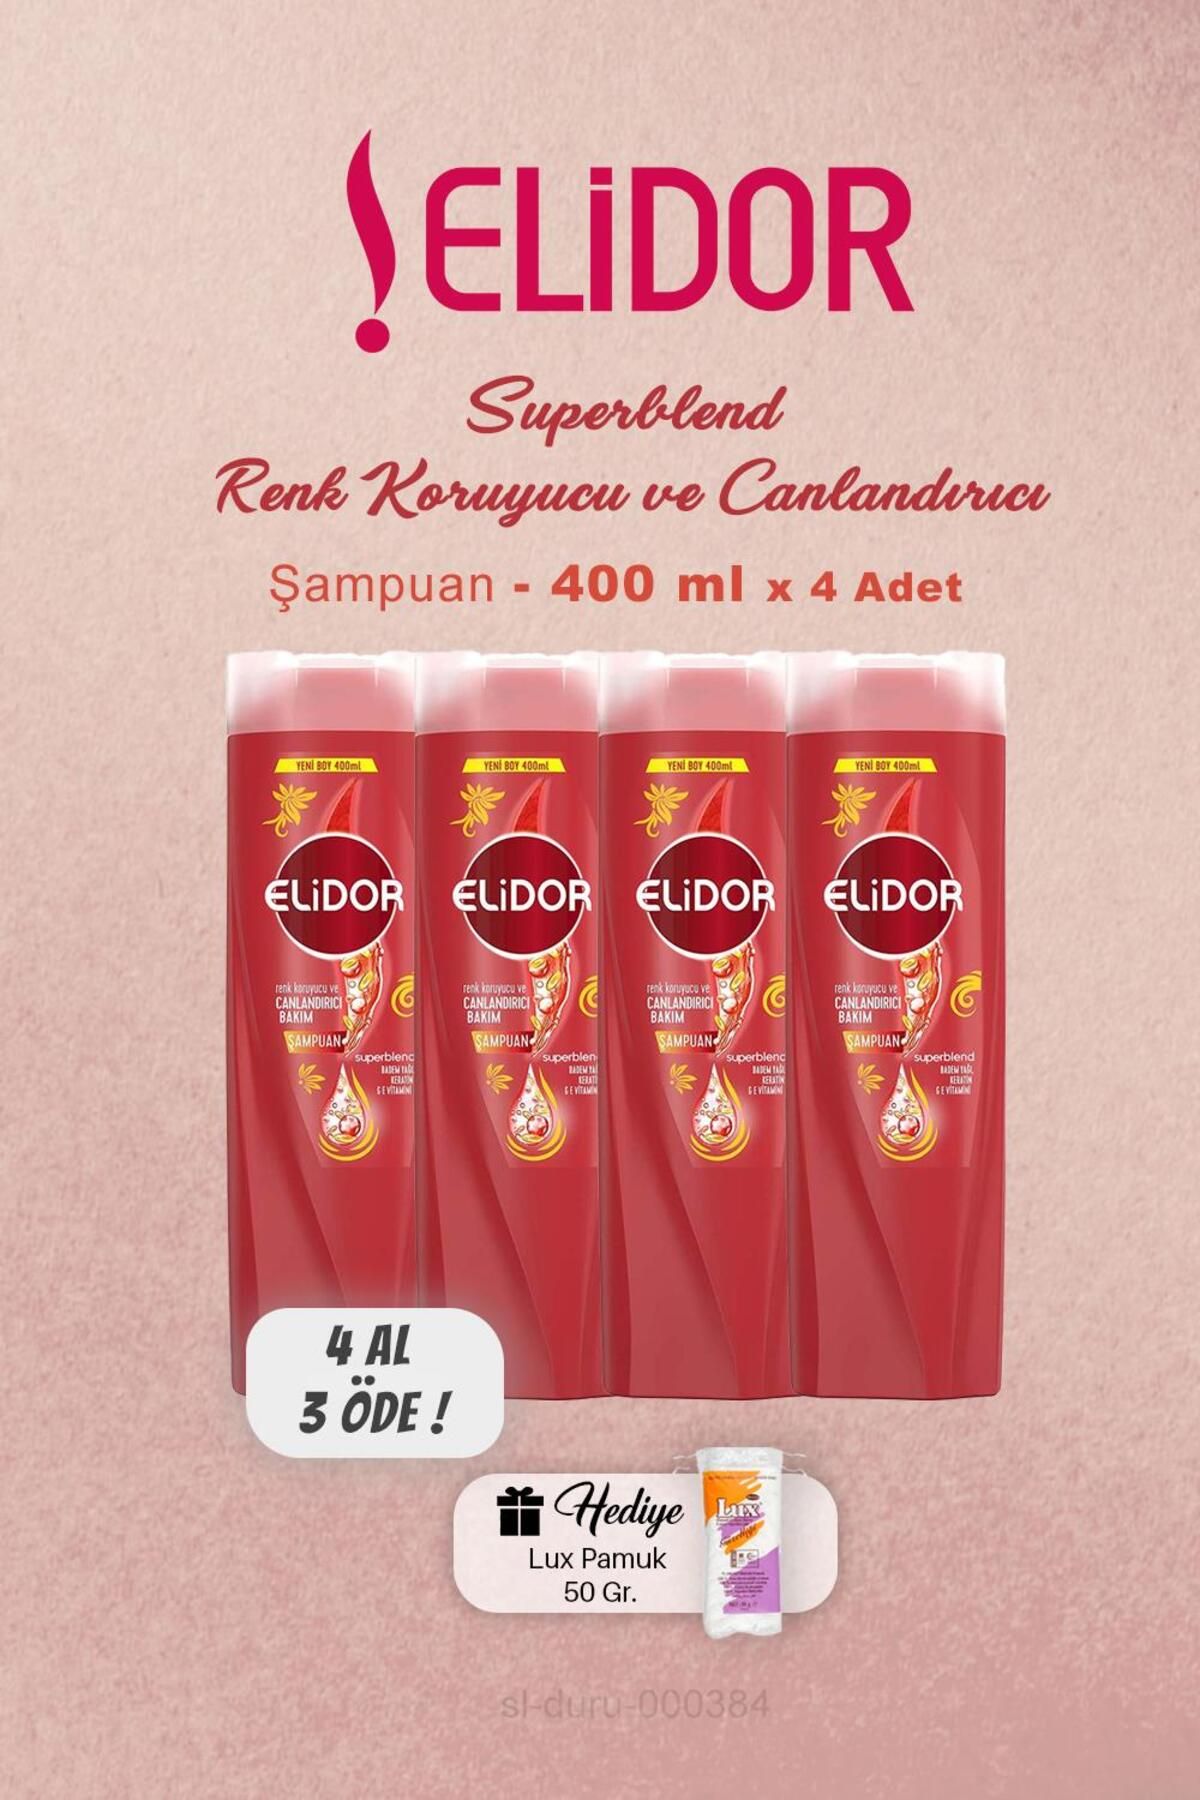 Elidor 4 AL 3 ÖDE Elidor Şampuan Renk Koruyucu Canlandırıcı 400 ml, Pamuk Hediyeli